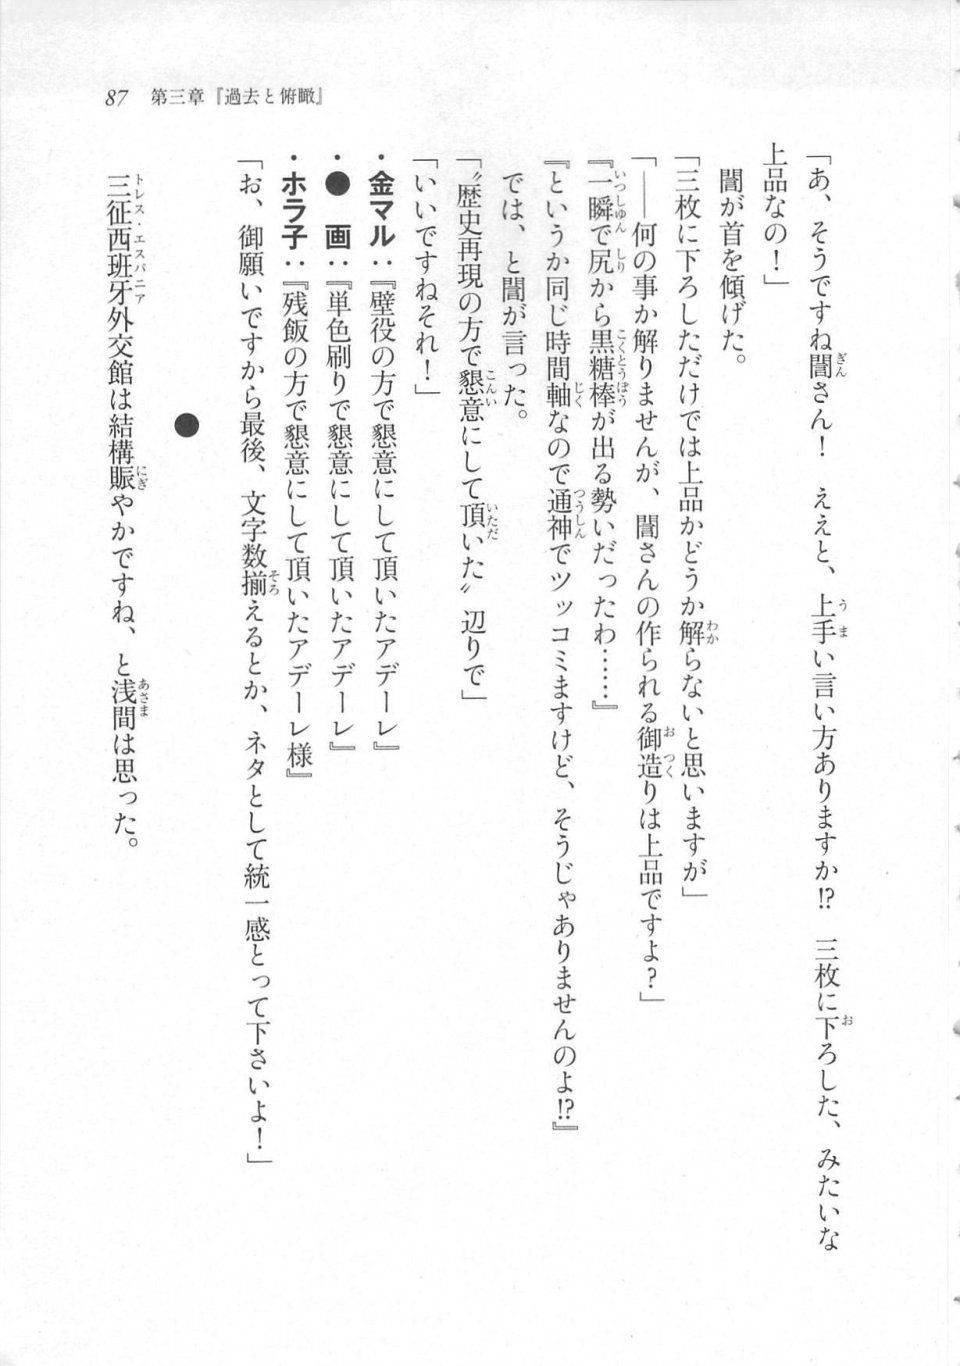 Kyoukai Senjou no Horizon LN Sidestory Vol 3 - Photo #91